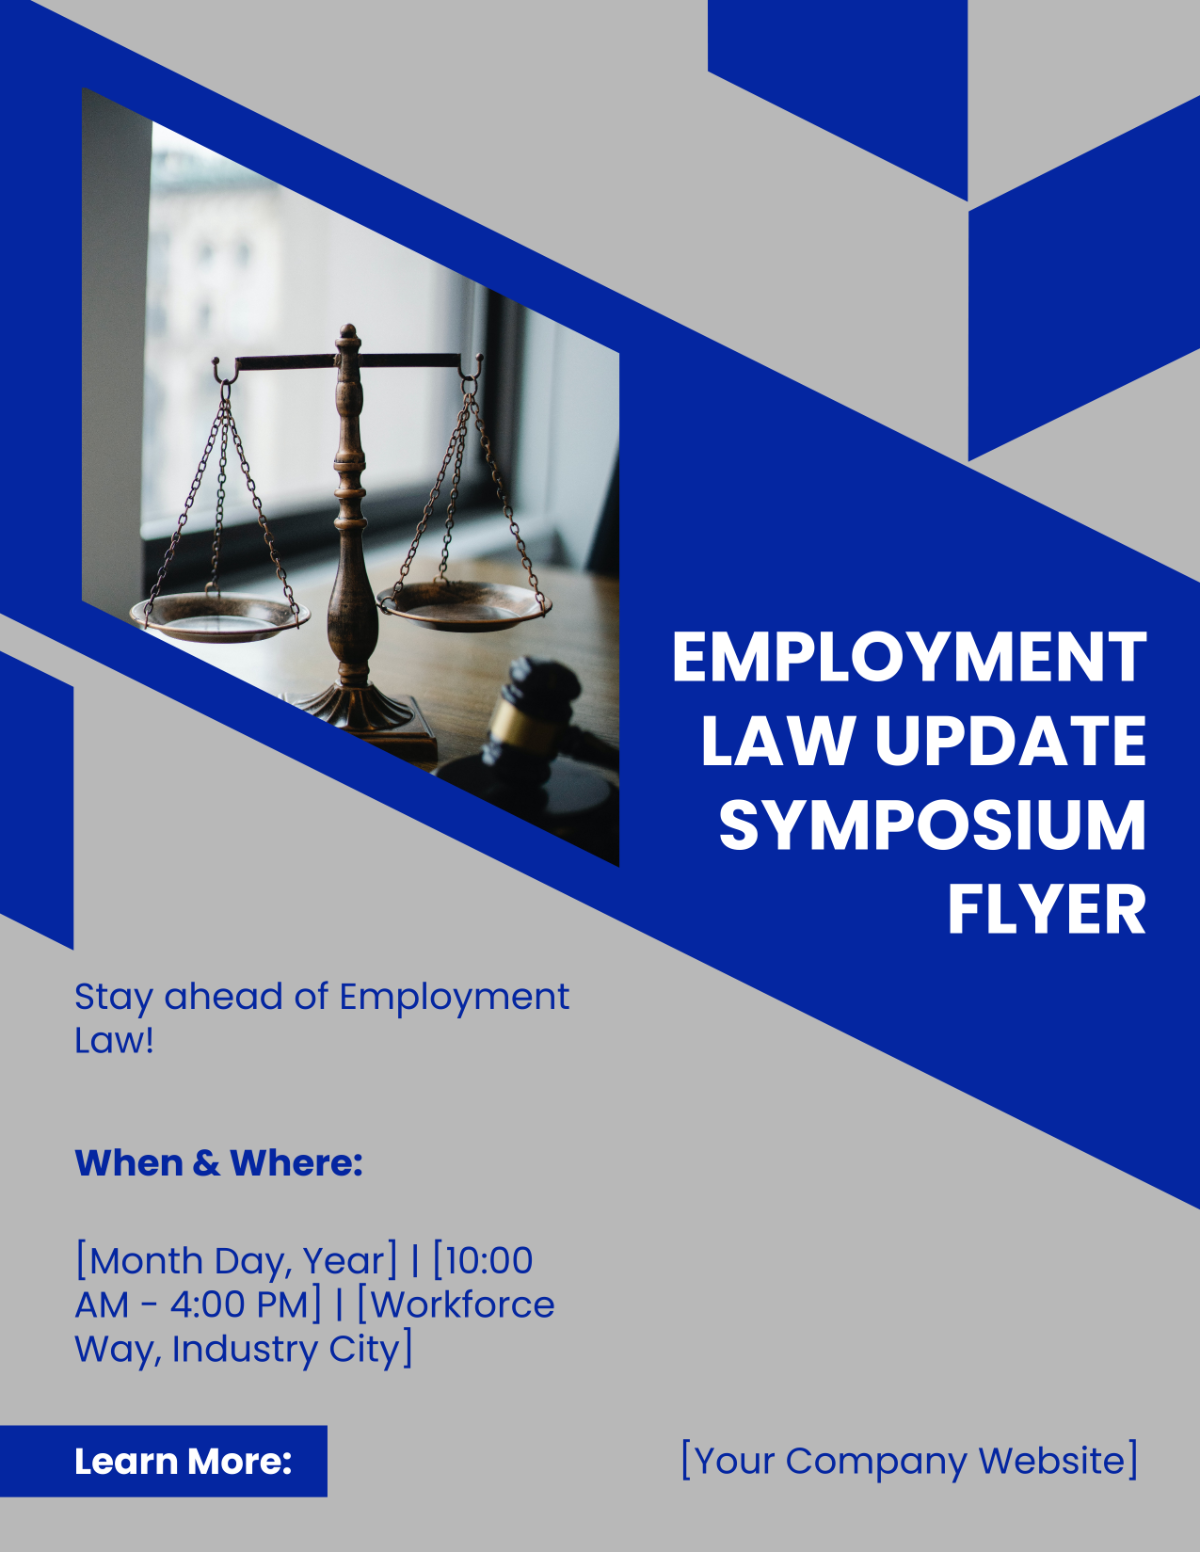 Employment Law Update Symposium Flyer